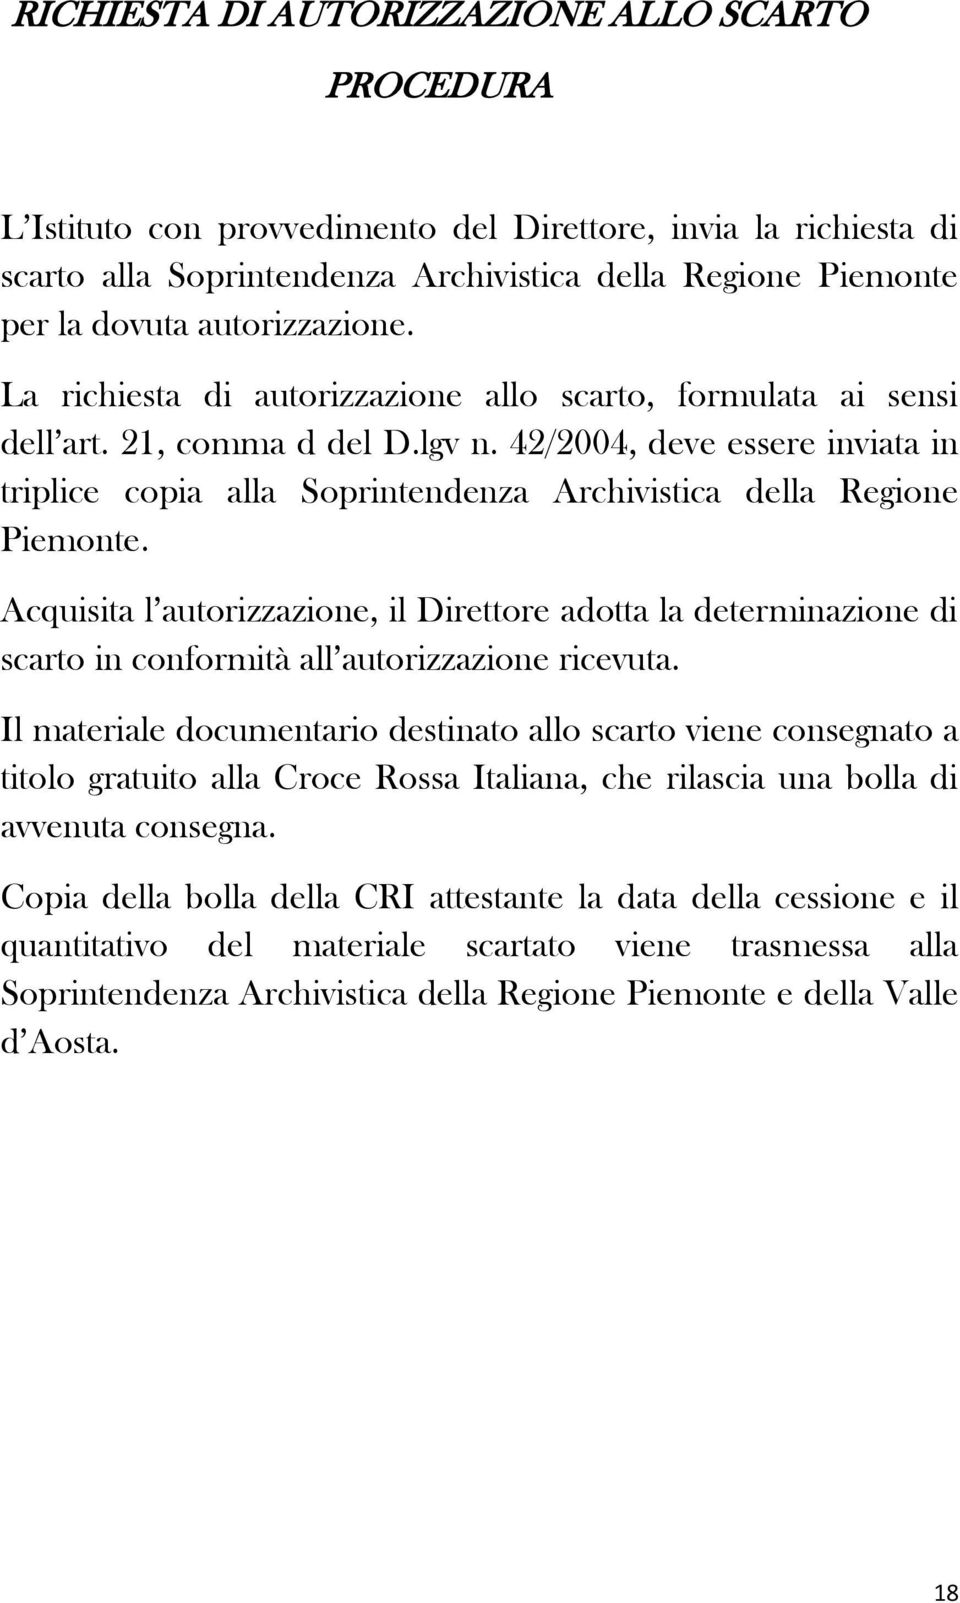 42/2004, deve essere inviata in triplice copia alla Soprintendenza Archivistica della Regione Piemonte.